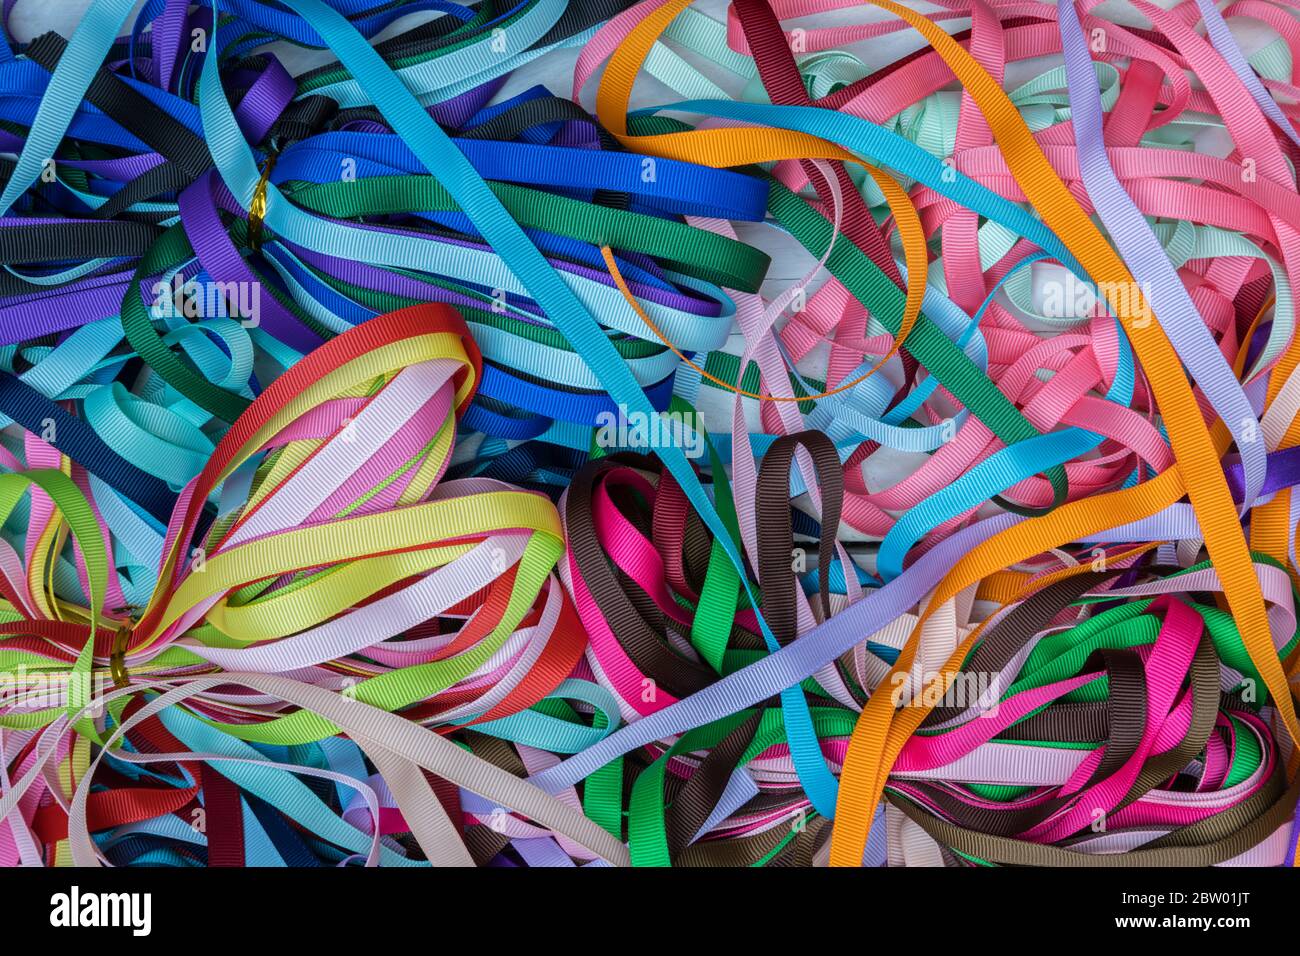 Muchas cintas de regalo de colores que llenan el fondo de la imagen Foto de stock